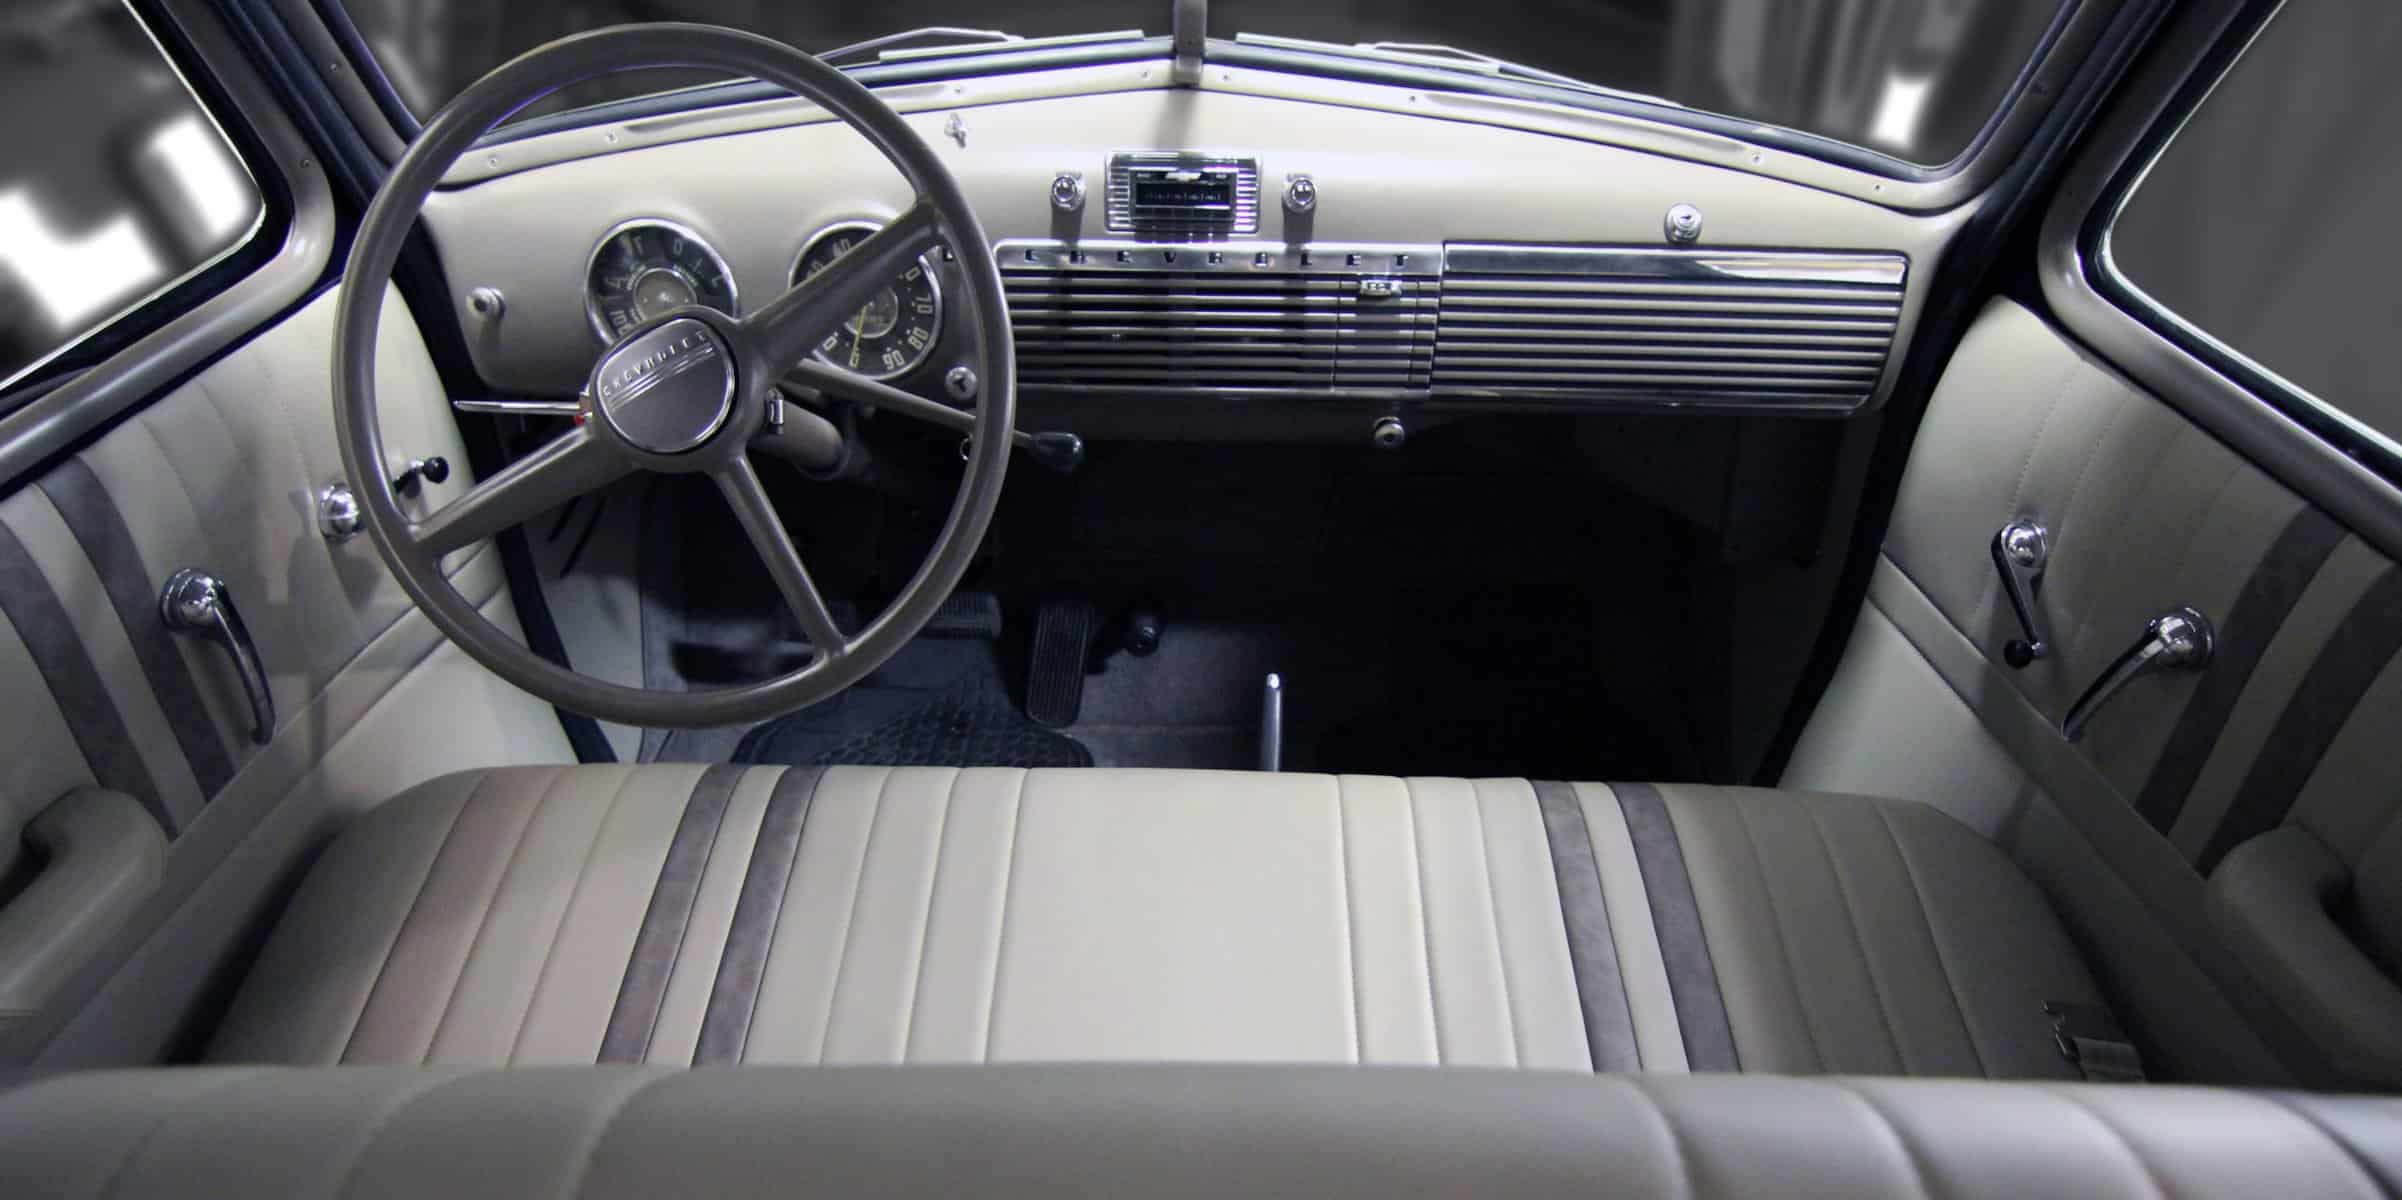 Chevrolet Striped Interior